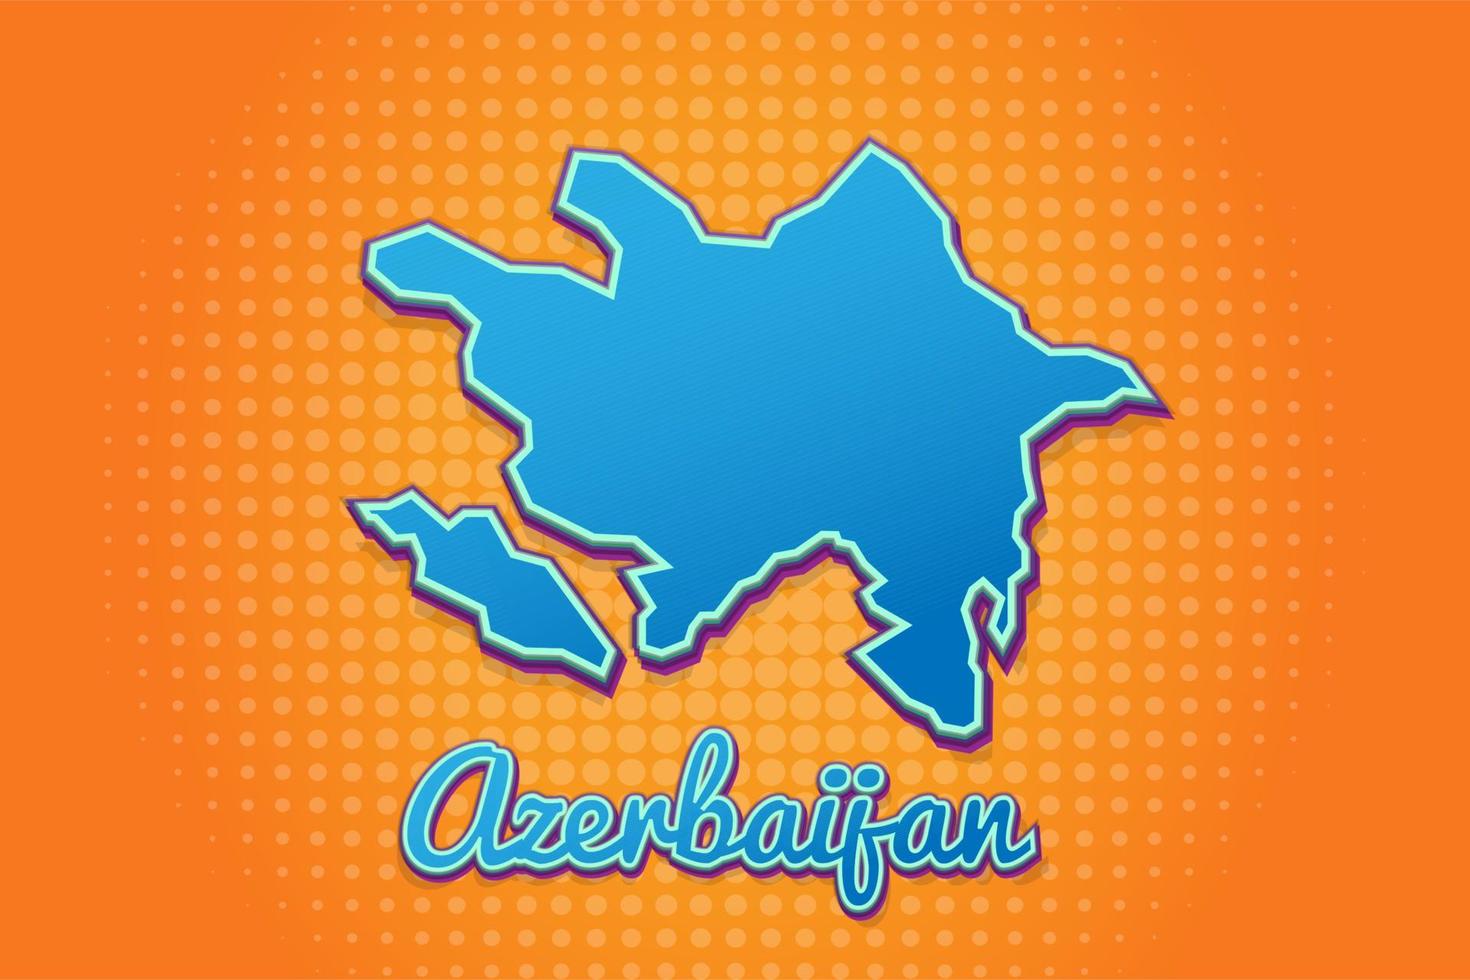 mapa retro de azerbaiyán con fondo de medios tonos. icono de mapa de dibujos animados en cómic y estilo pop art. concepto de negocio de cartografía. genial para el diseño de niños, juegos educativos, imanes o diseño de afiches. vector